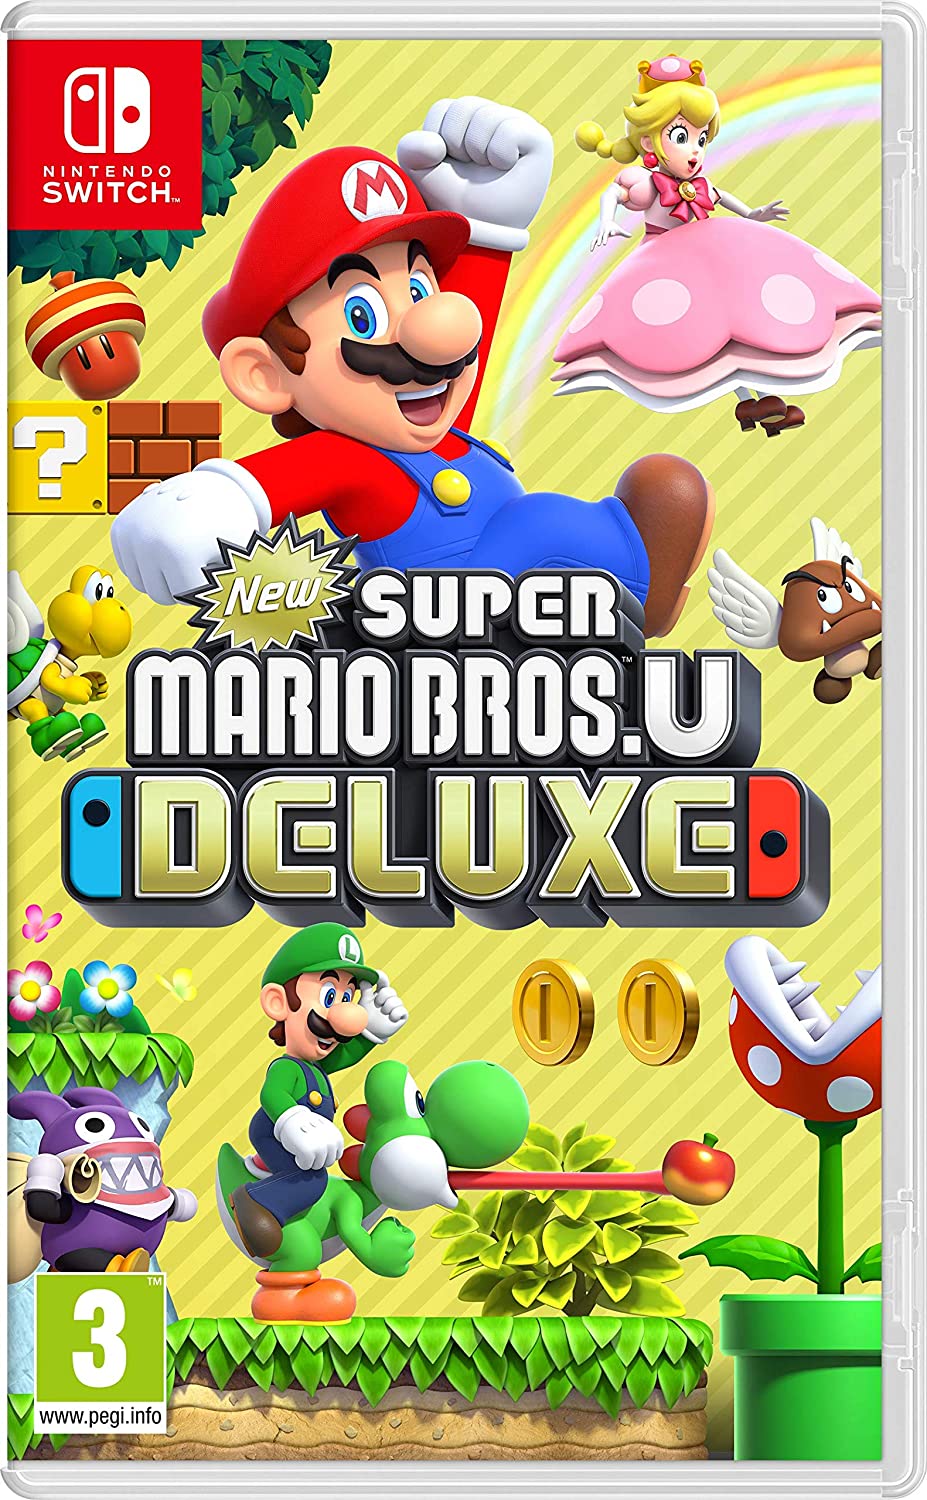 غلاف فني فاخر لـ Super Mario Bros. U لجهاز Nintendo Switch.